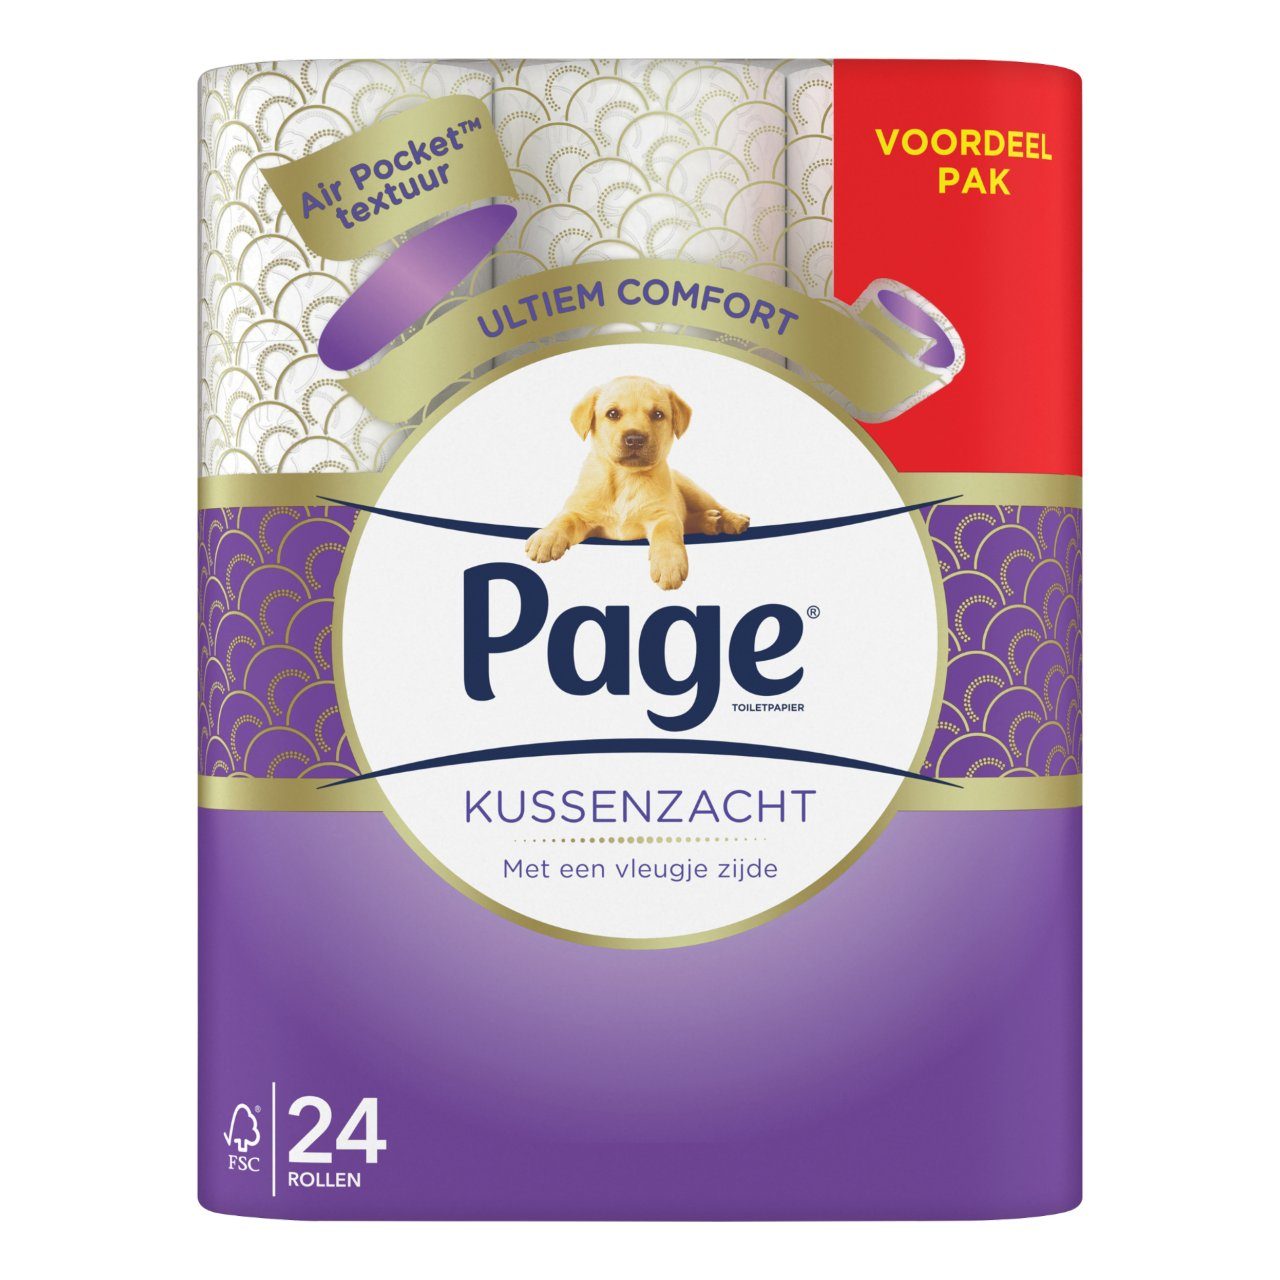 De onze maagpijn hoofdstuk Page Toiletpapier kussenzacht Pak 24 rollen | dekweker.nl